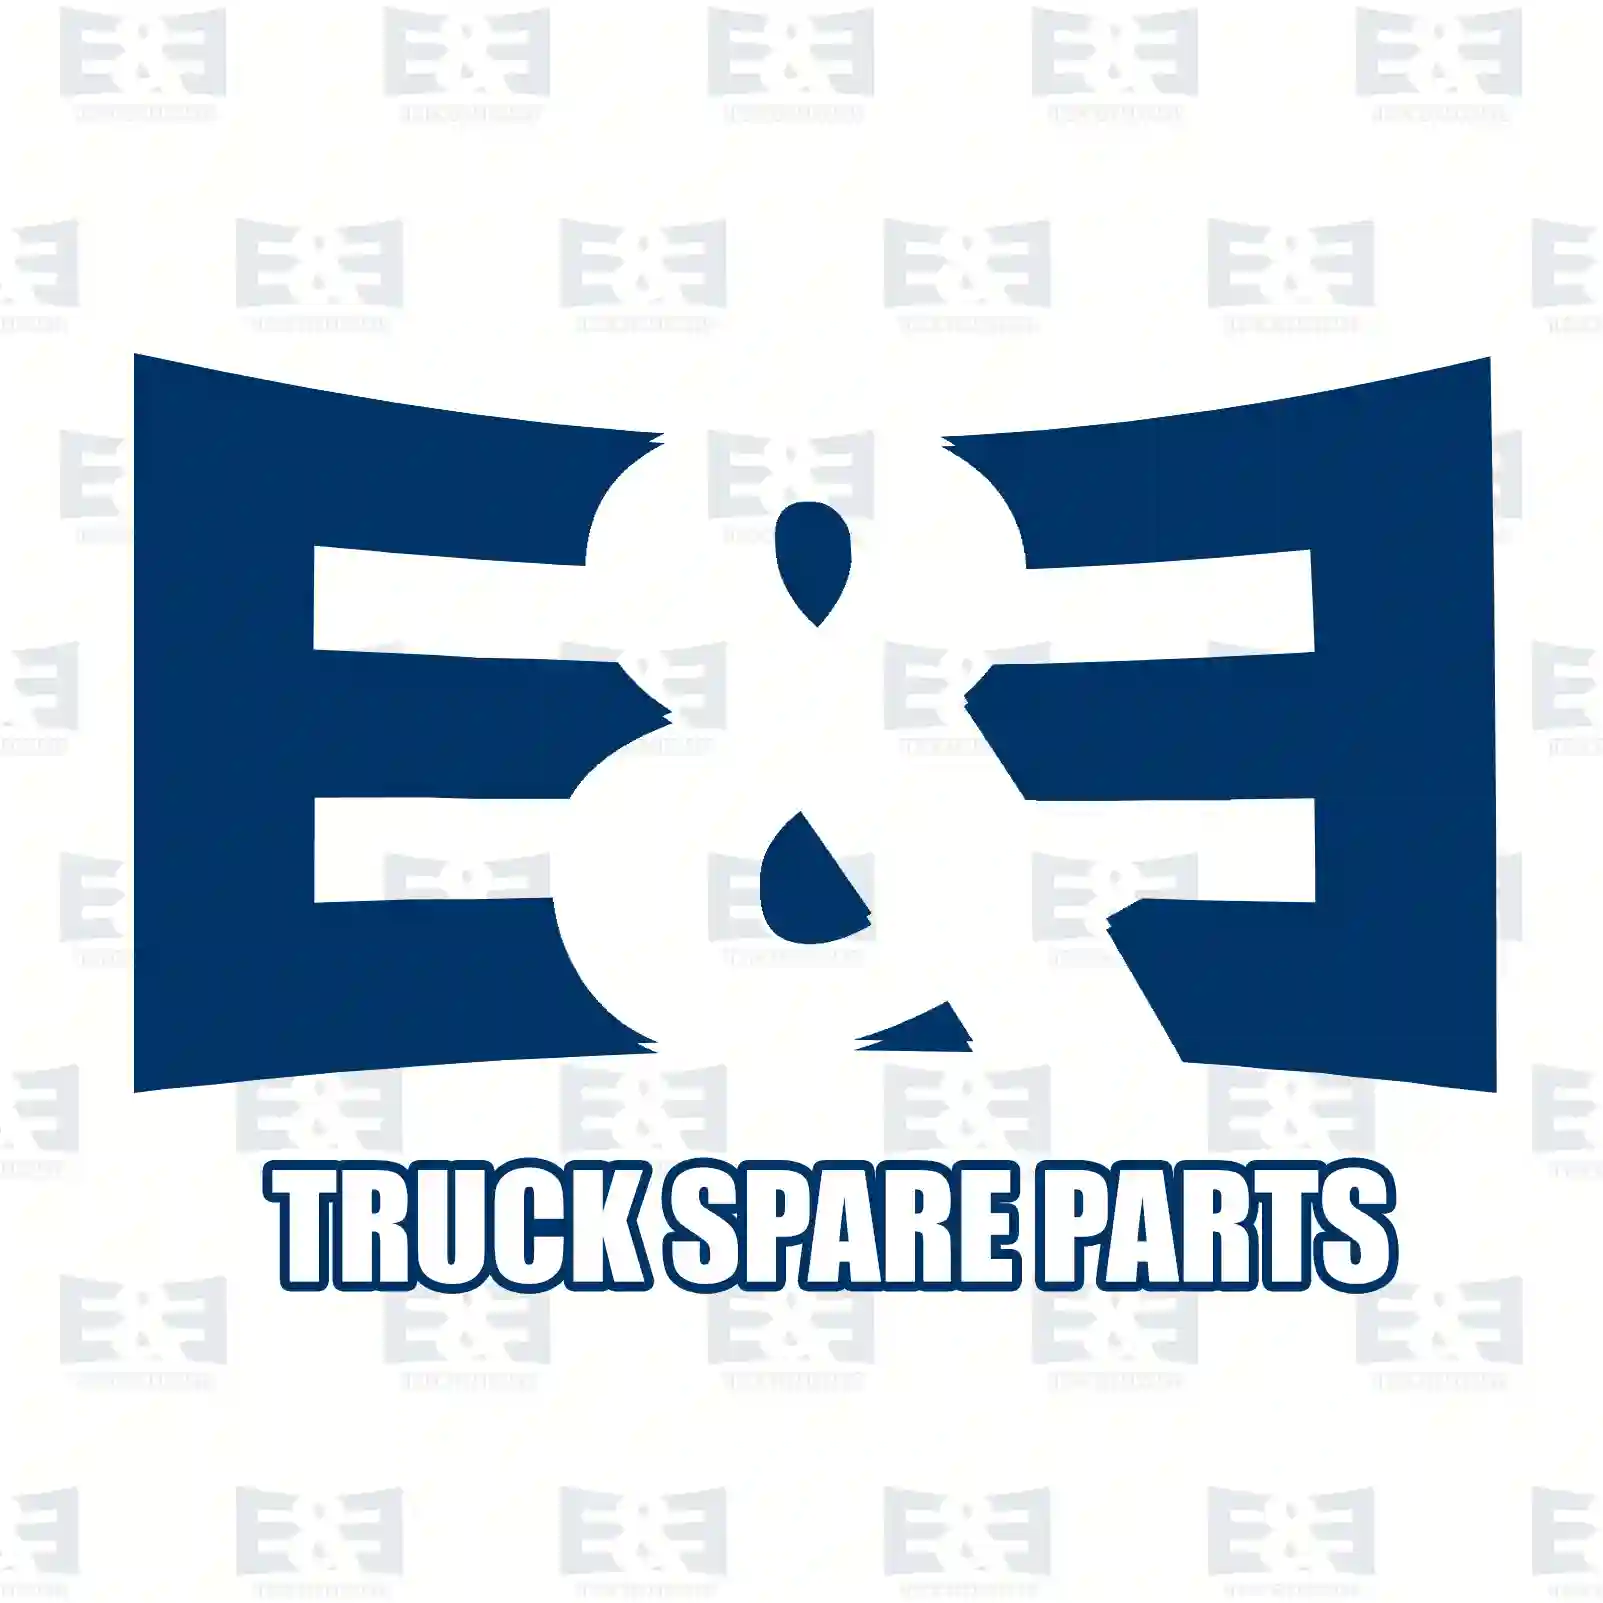 Wiper blade, 2E2280997, 5801607103, ZG21307-0008 ||  2E2280997 E&E Truck Spare Parts | Truck Spare Parts, Auotomotive Spare Parts Wiper blade, 2E2280997, 5801607103, ZG21307-0008 ||  2E2280997 E&E Truck Spare Parts | Truck Spare Parts, Auotomotive Spare Parts